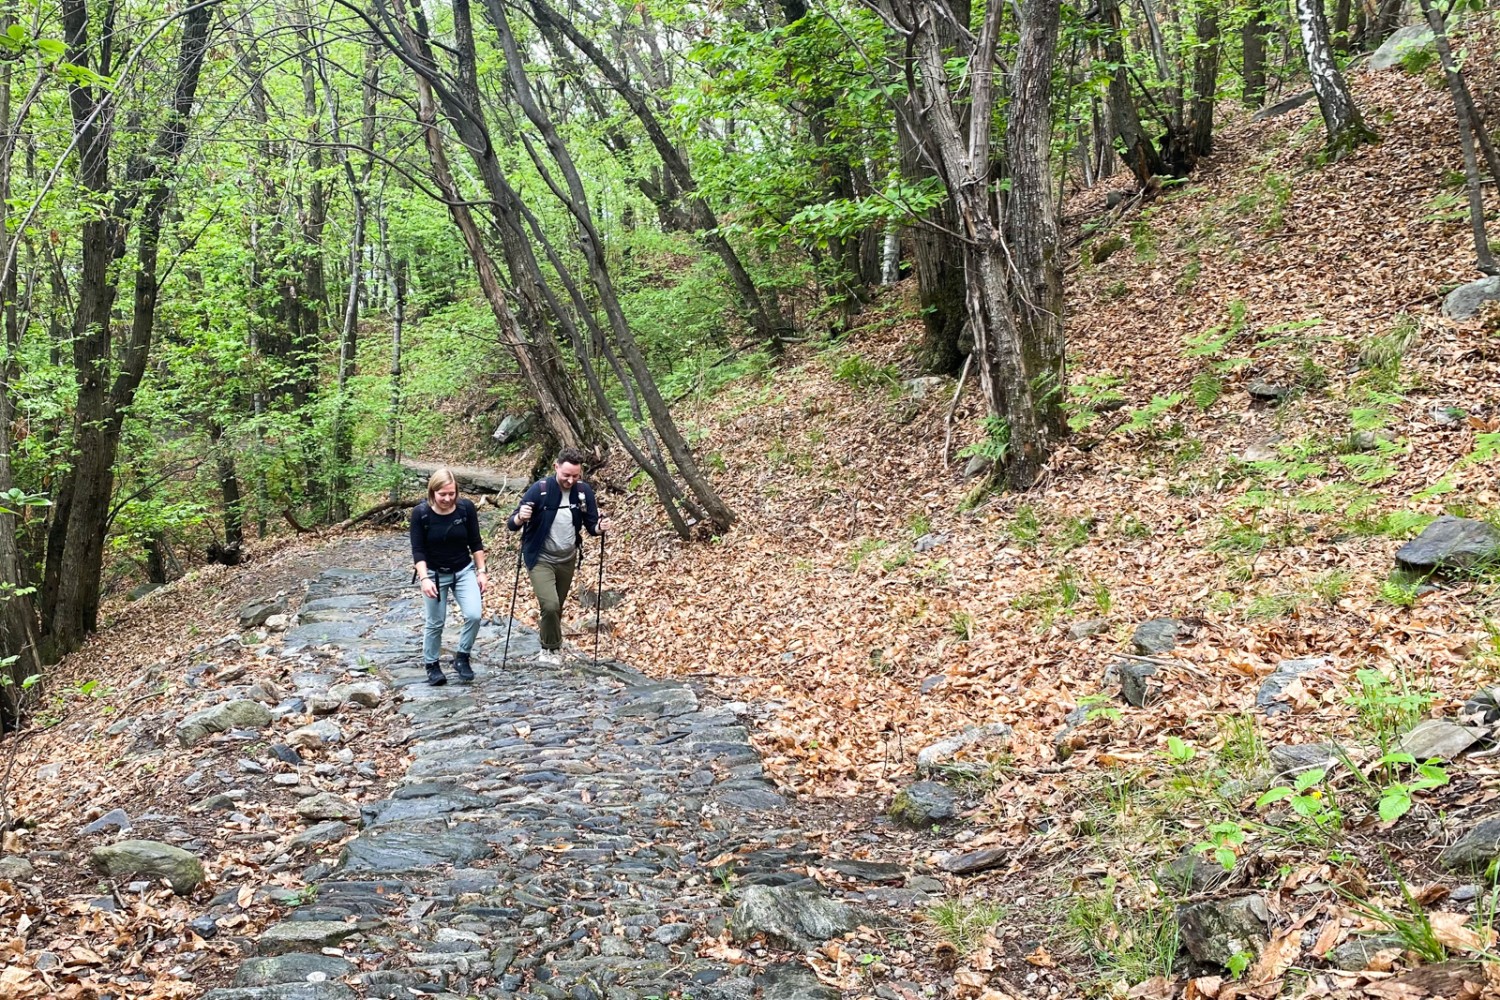 Typisch Tessin: wandern auf alten, mit Steinen gepflasterten Wegen durch den Kastanienwald. Bild: Loïc von Matt